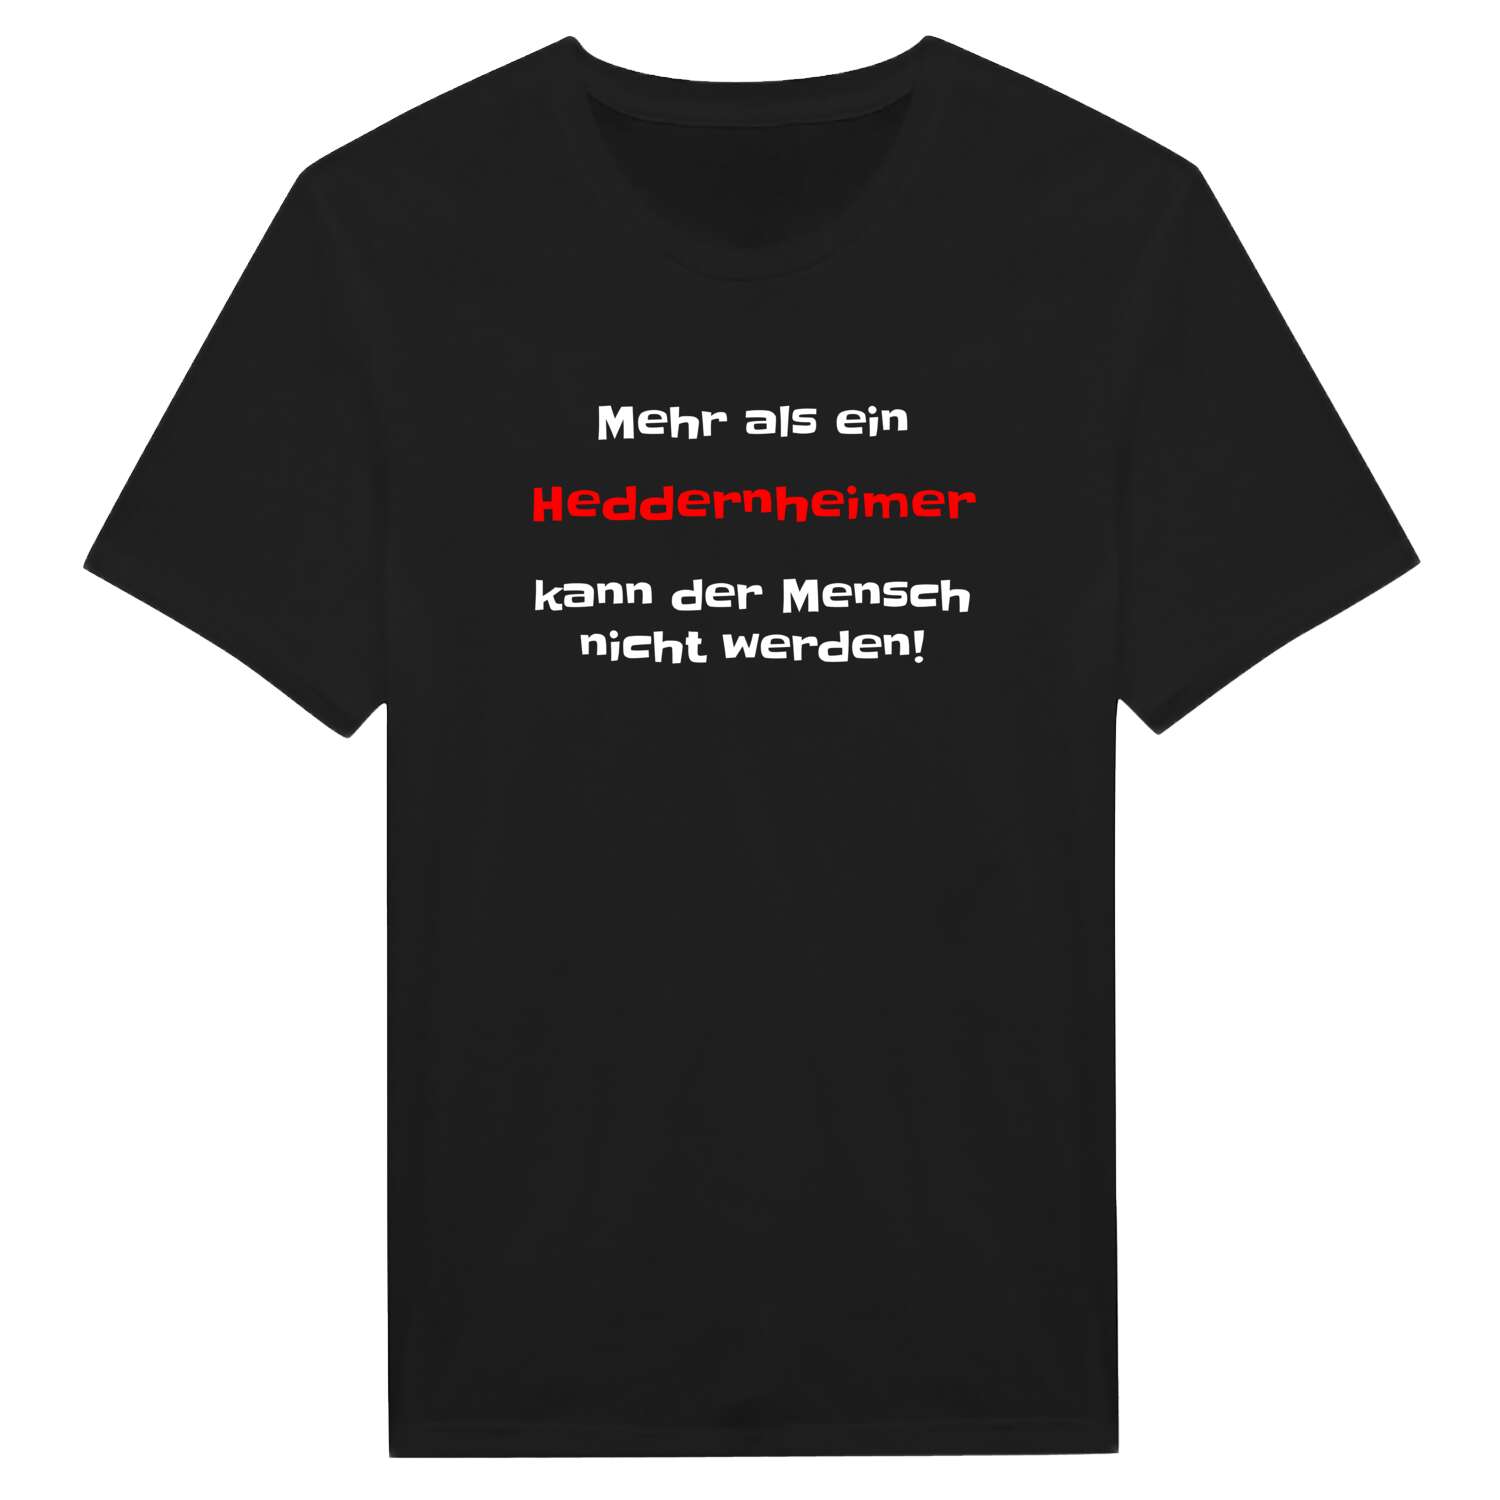 Heddernheim T-Shirt »Mehr als ein«